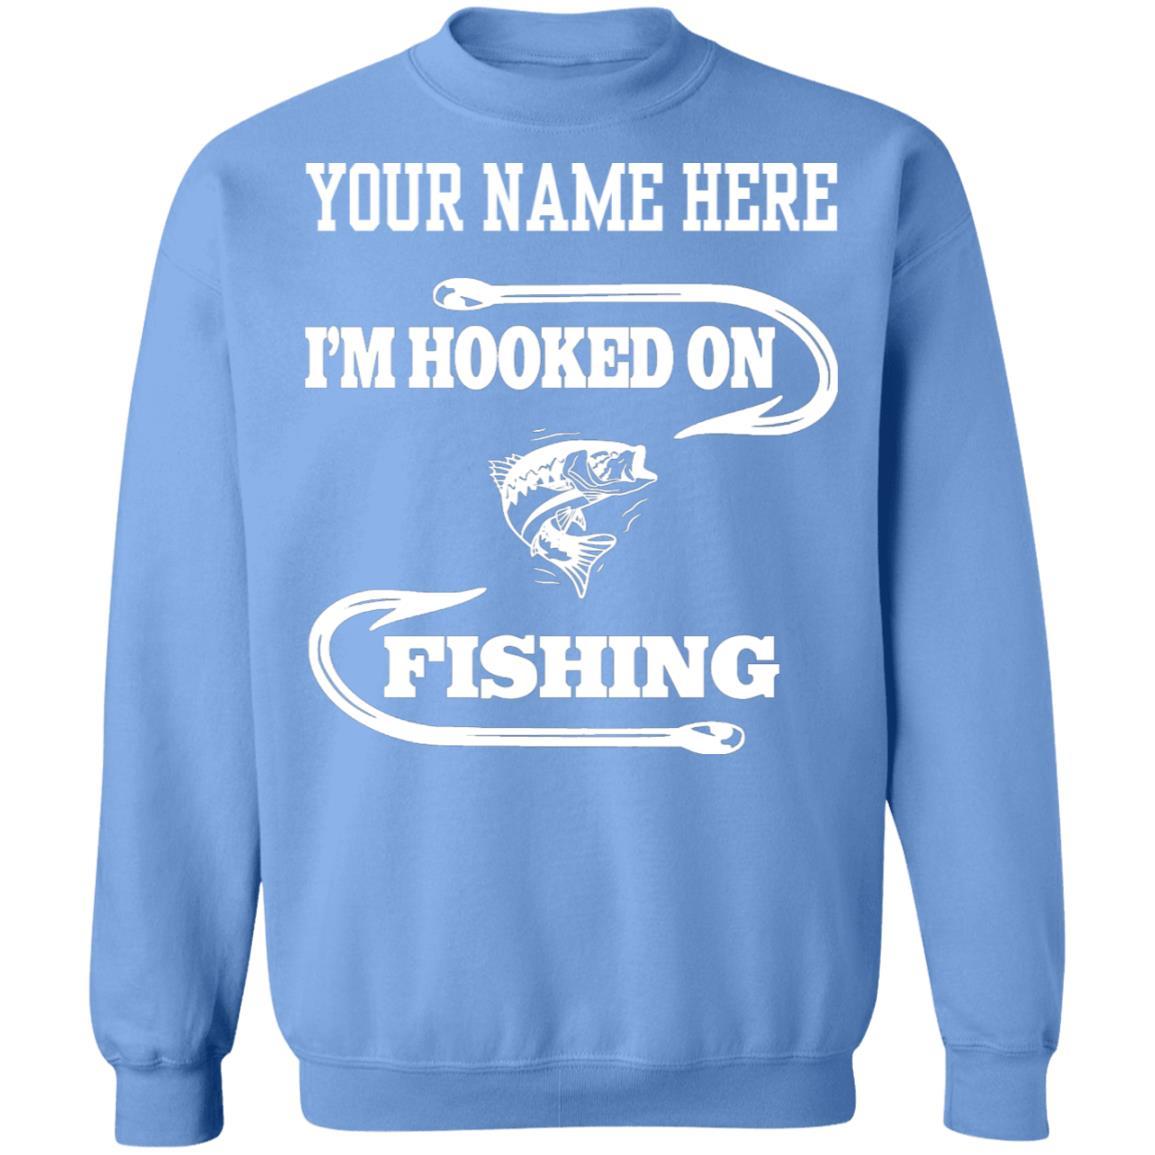 I'm hooked on fishing sweatshirt carolina-blue